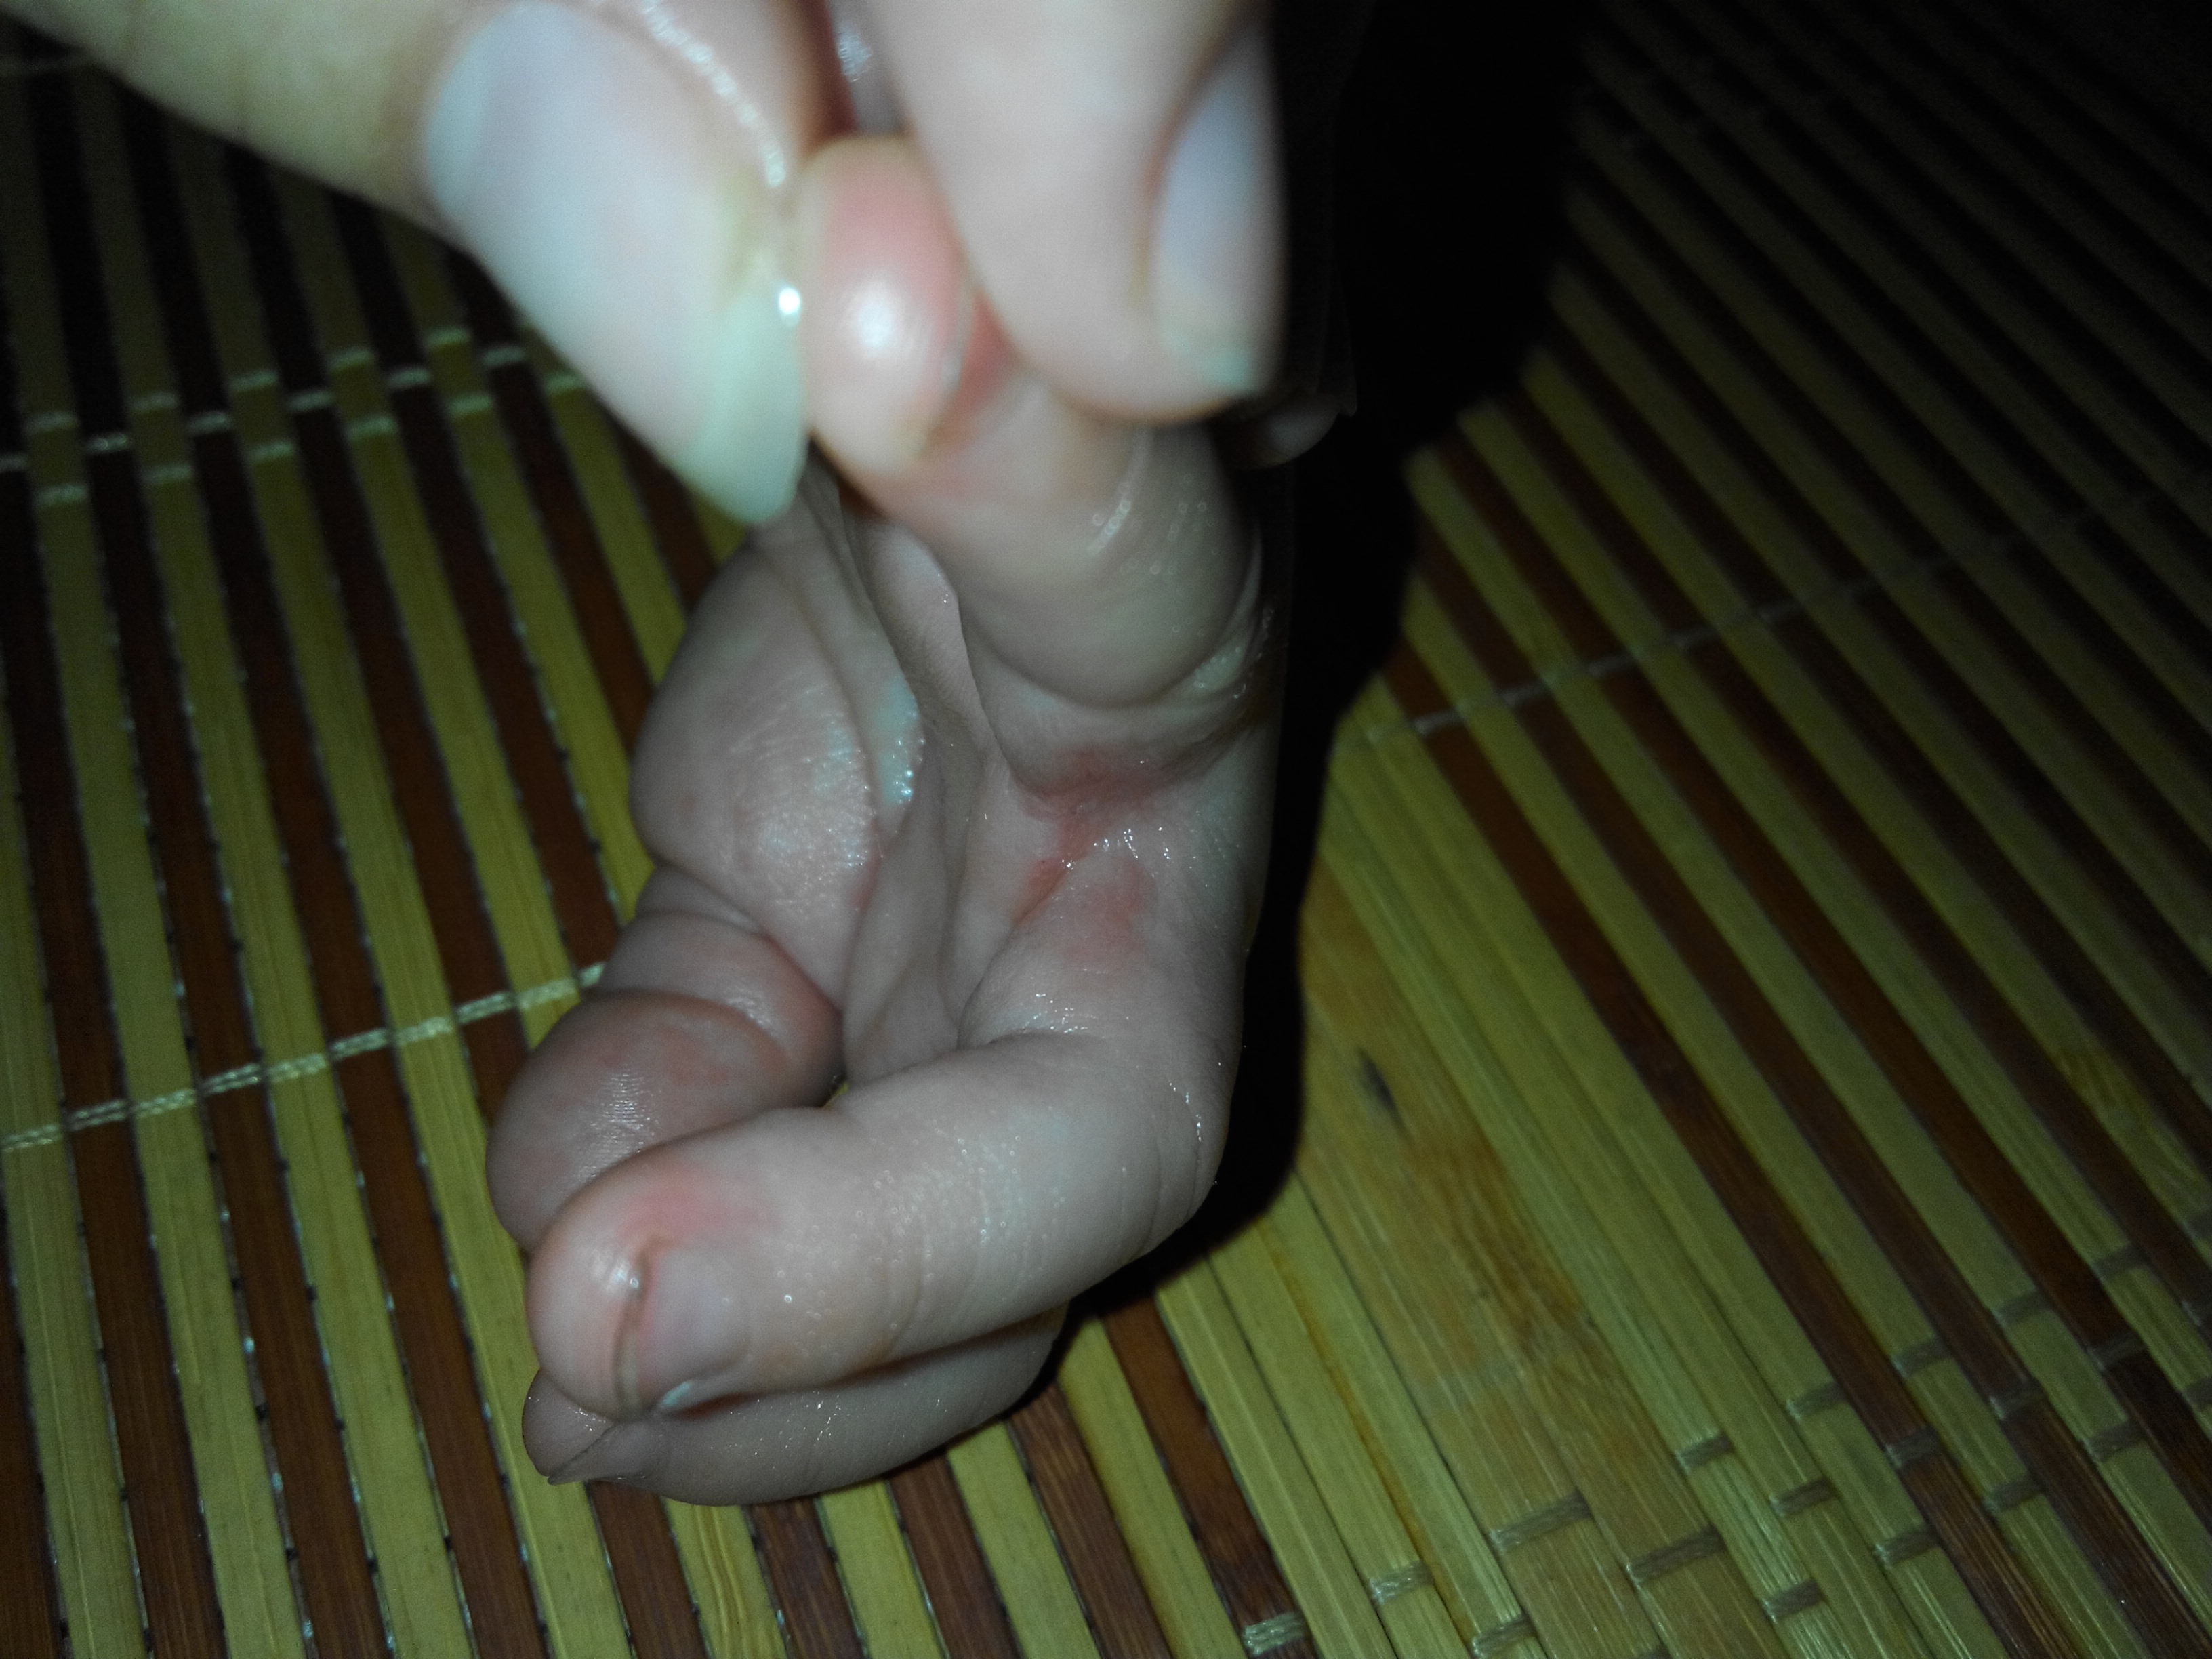 差不多一个星期前发现小孩手指缝里红红的好像要烂了一样